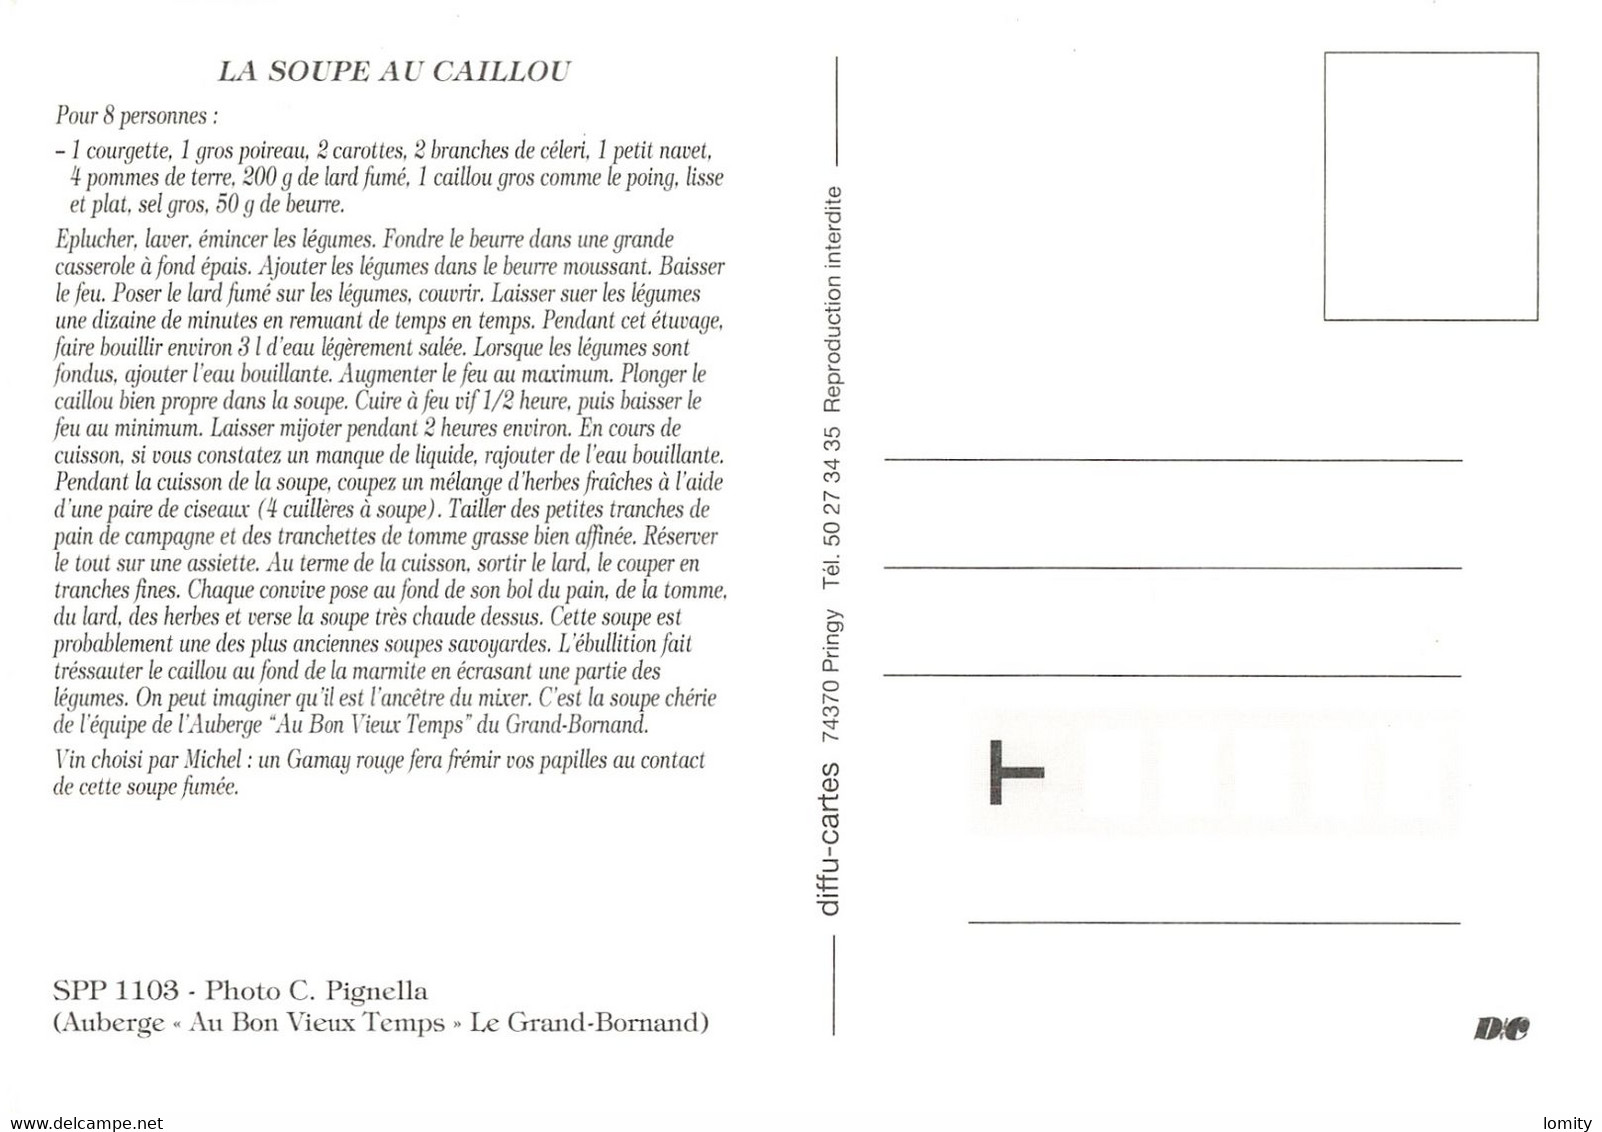 lot 12 cartes postales recette de cuisine CPM far breton kouign aman teurgoule potée soupe caillou huitres au cidre